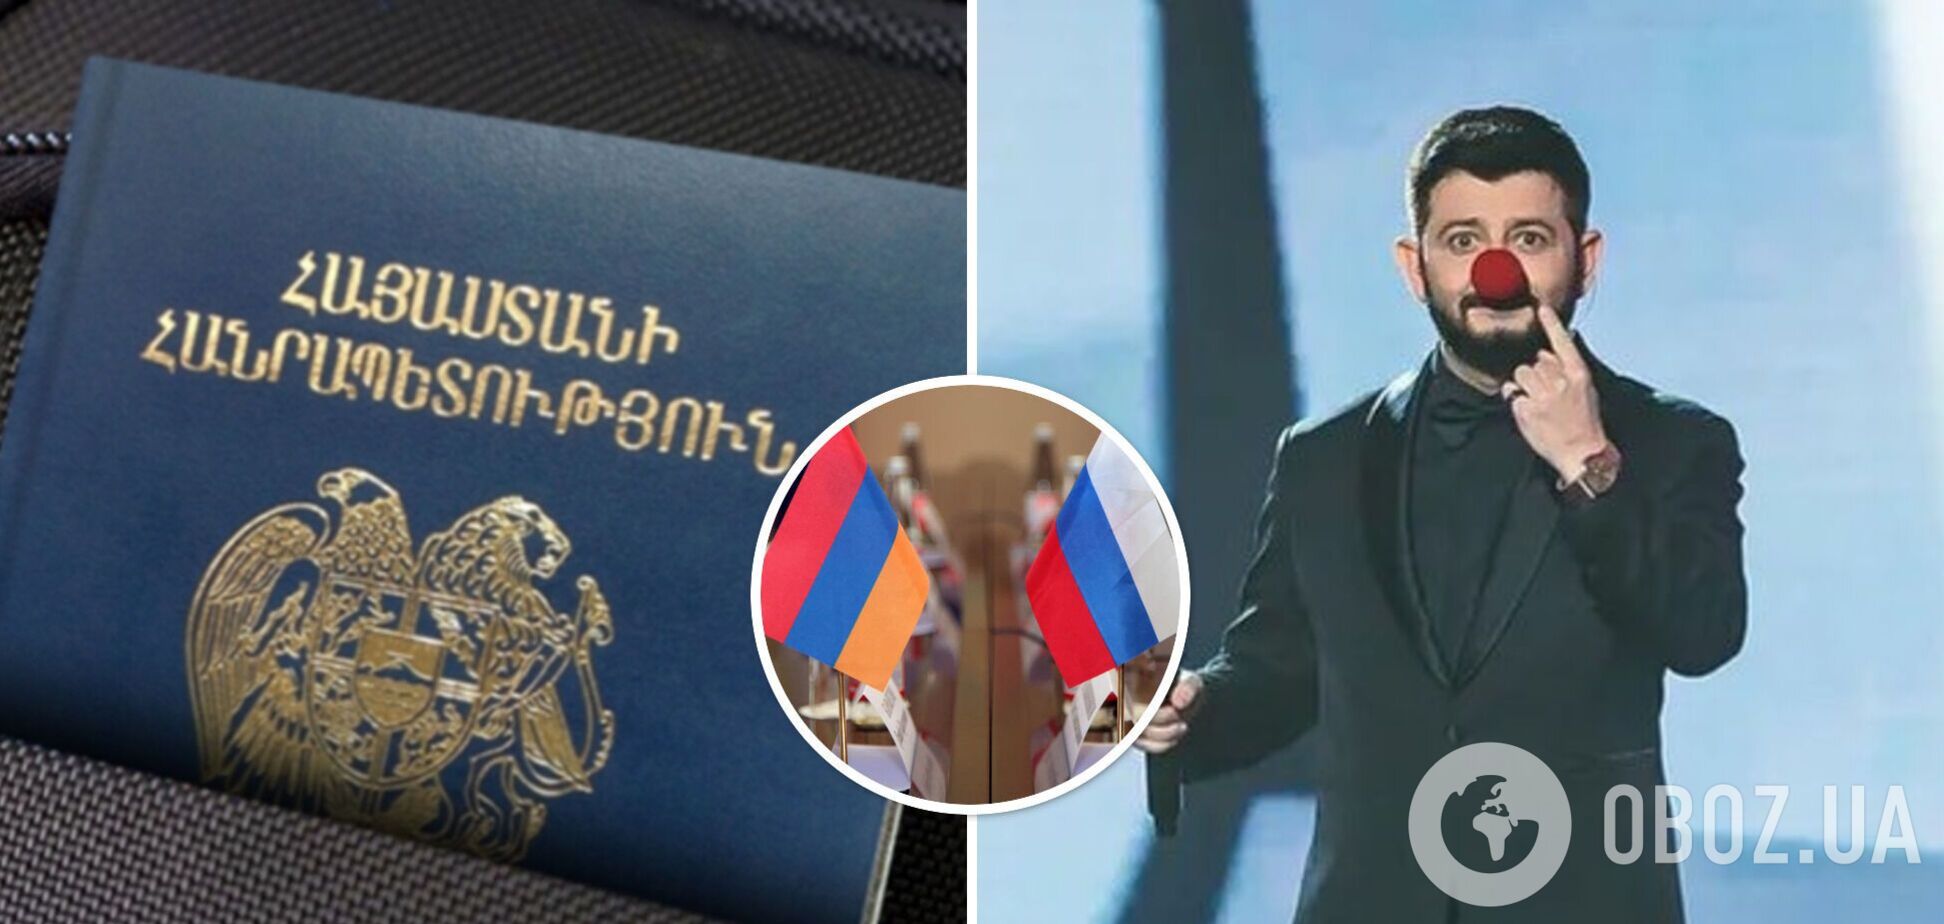 Галустян, получивший новое гражданство, оправдался перед россиянами и признался, планирует ли переезжать из РФ